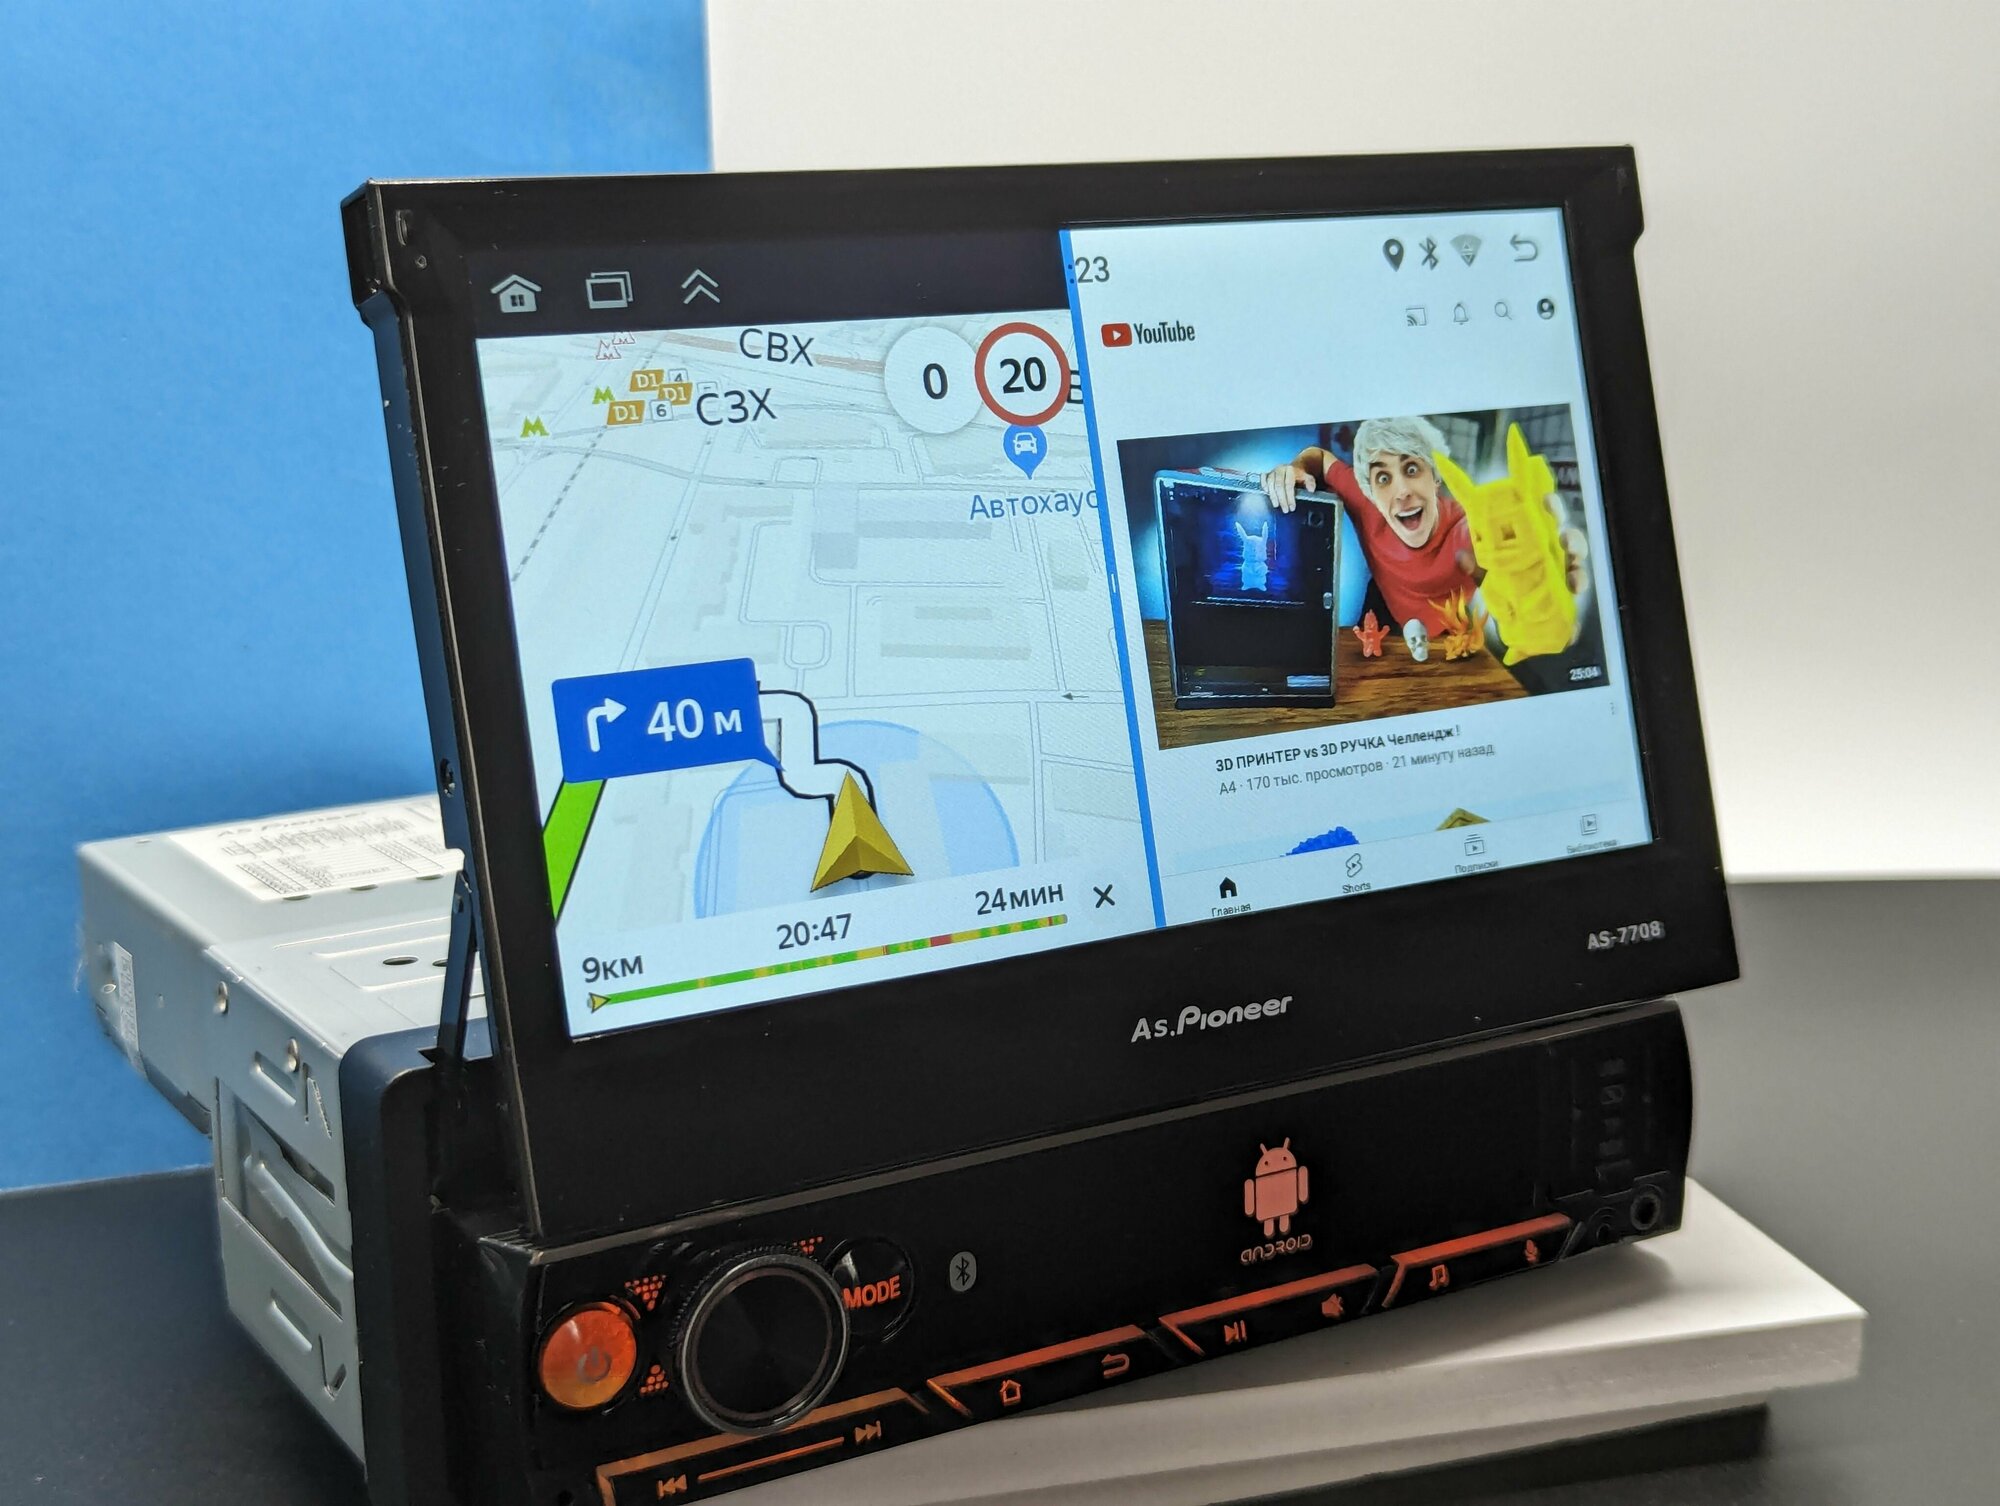 Выдвижная Андроид 4+64ГБ магнитола 1Din c навигатором и блютус (GPS, Wi-Fi, Bluetooth, AUX, SD, USB, CarPlay) с сенсорным экраном 7 дюймов